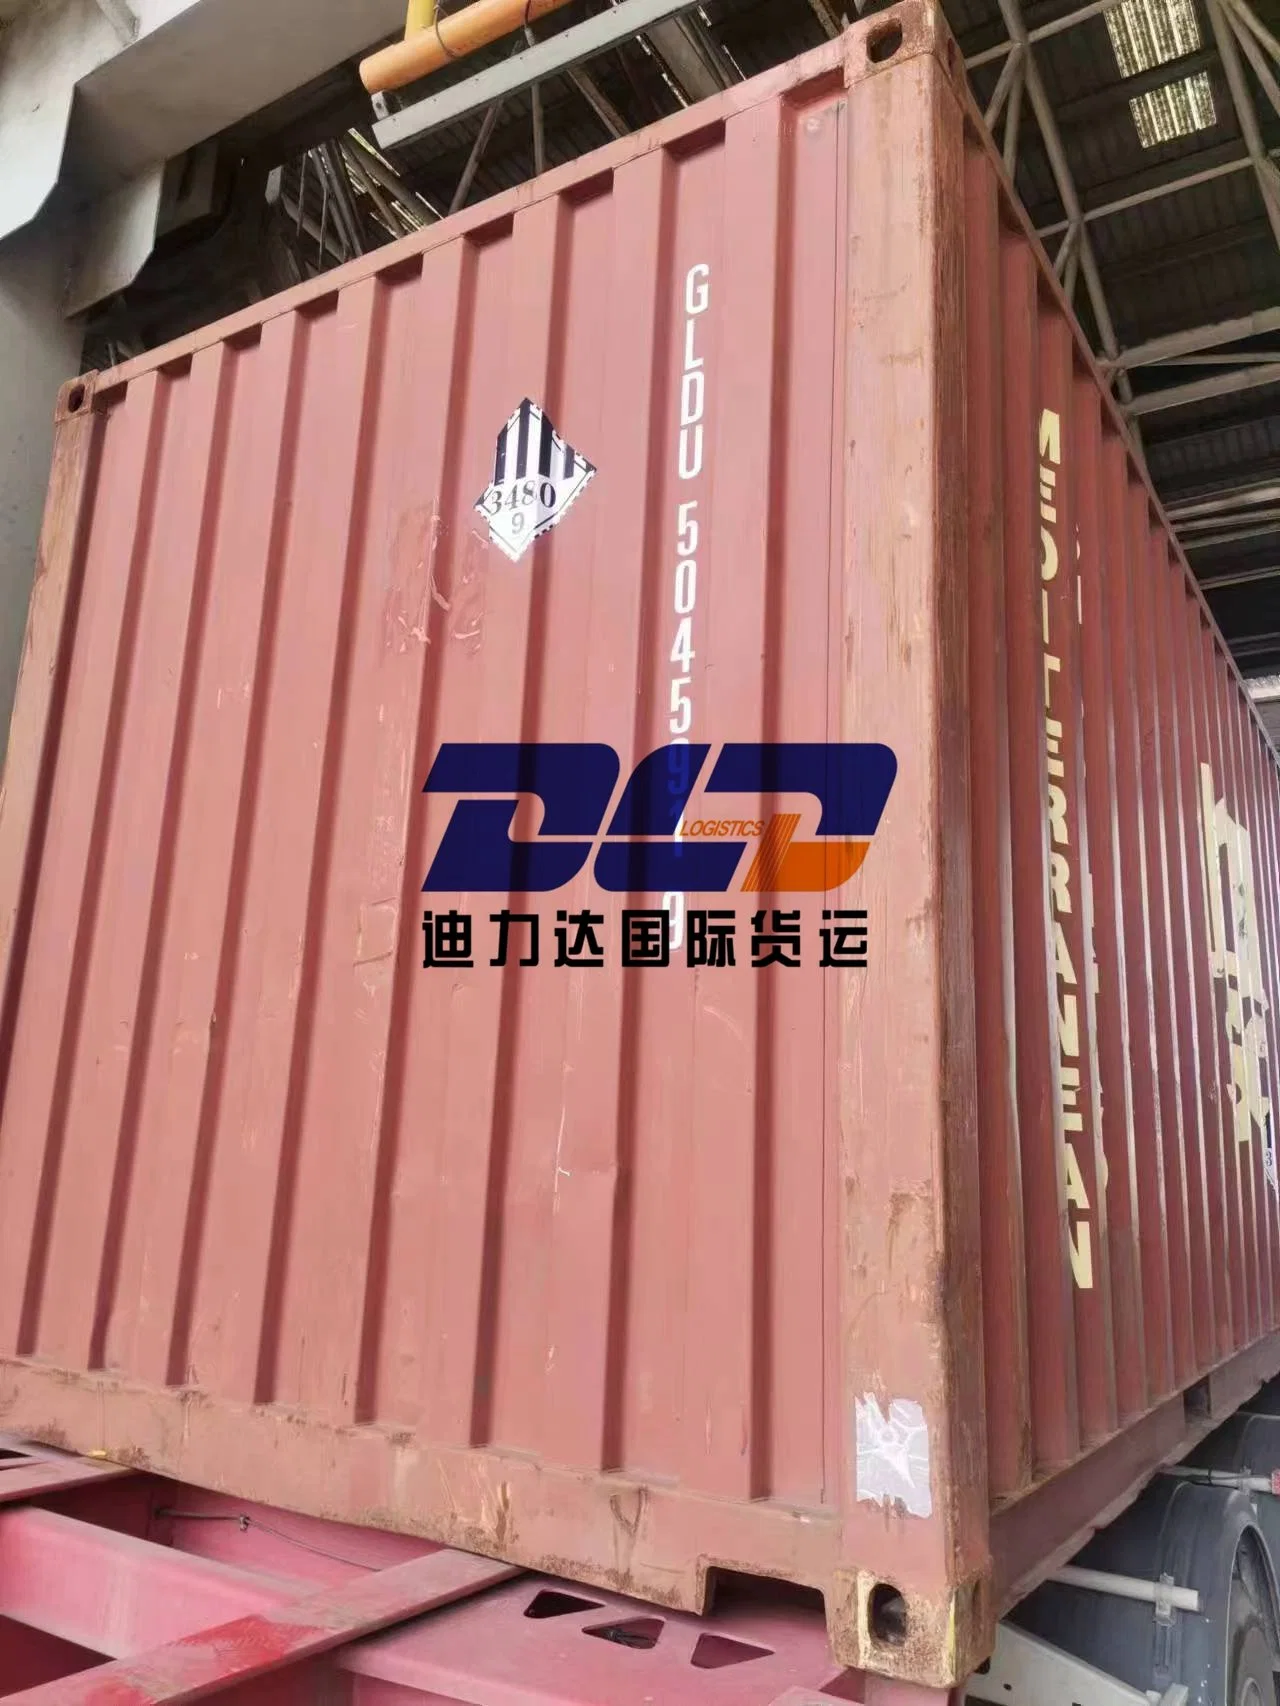 FCL LCL el envío de Shenzhen y Hong Kong a Europa--3480 Batería de la ONU de la Clase 9 Transporte